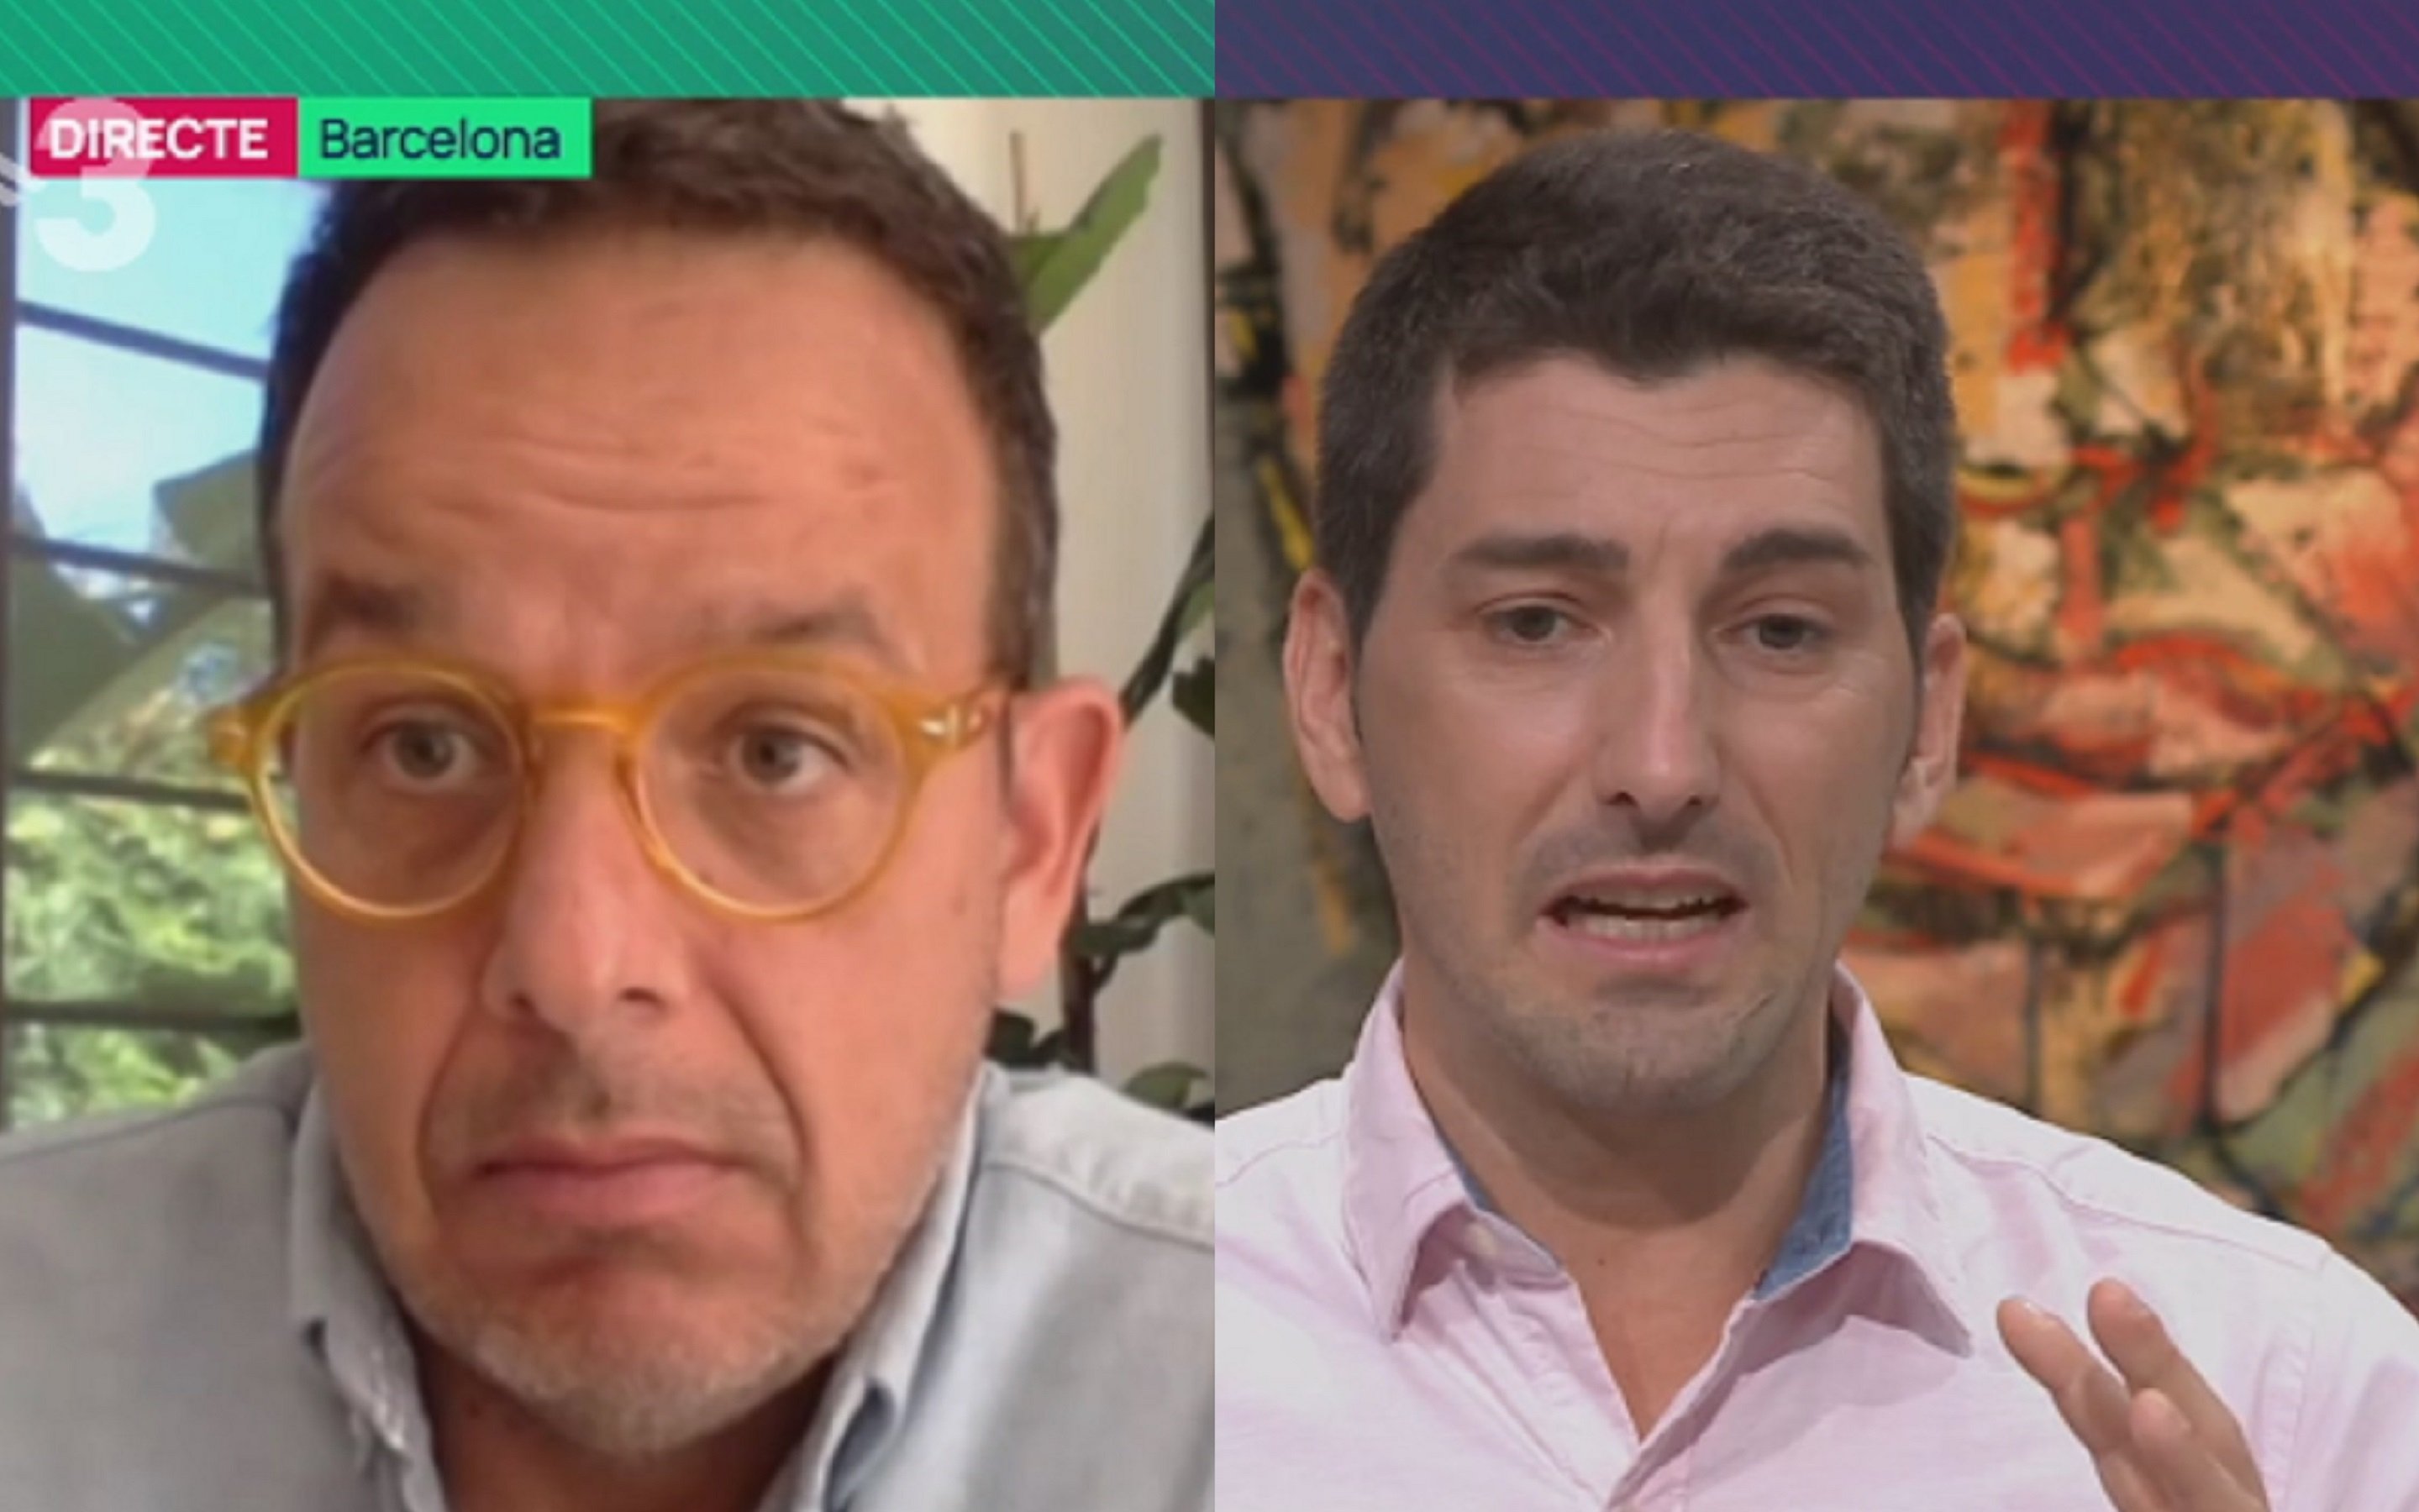 Cara a cara entre Llàcer i Mitjà a TV3: "No faig crítica banal i innecessària"